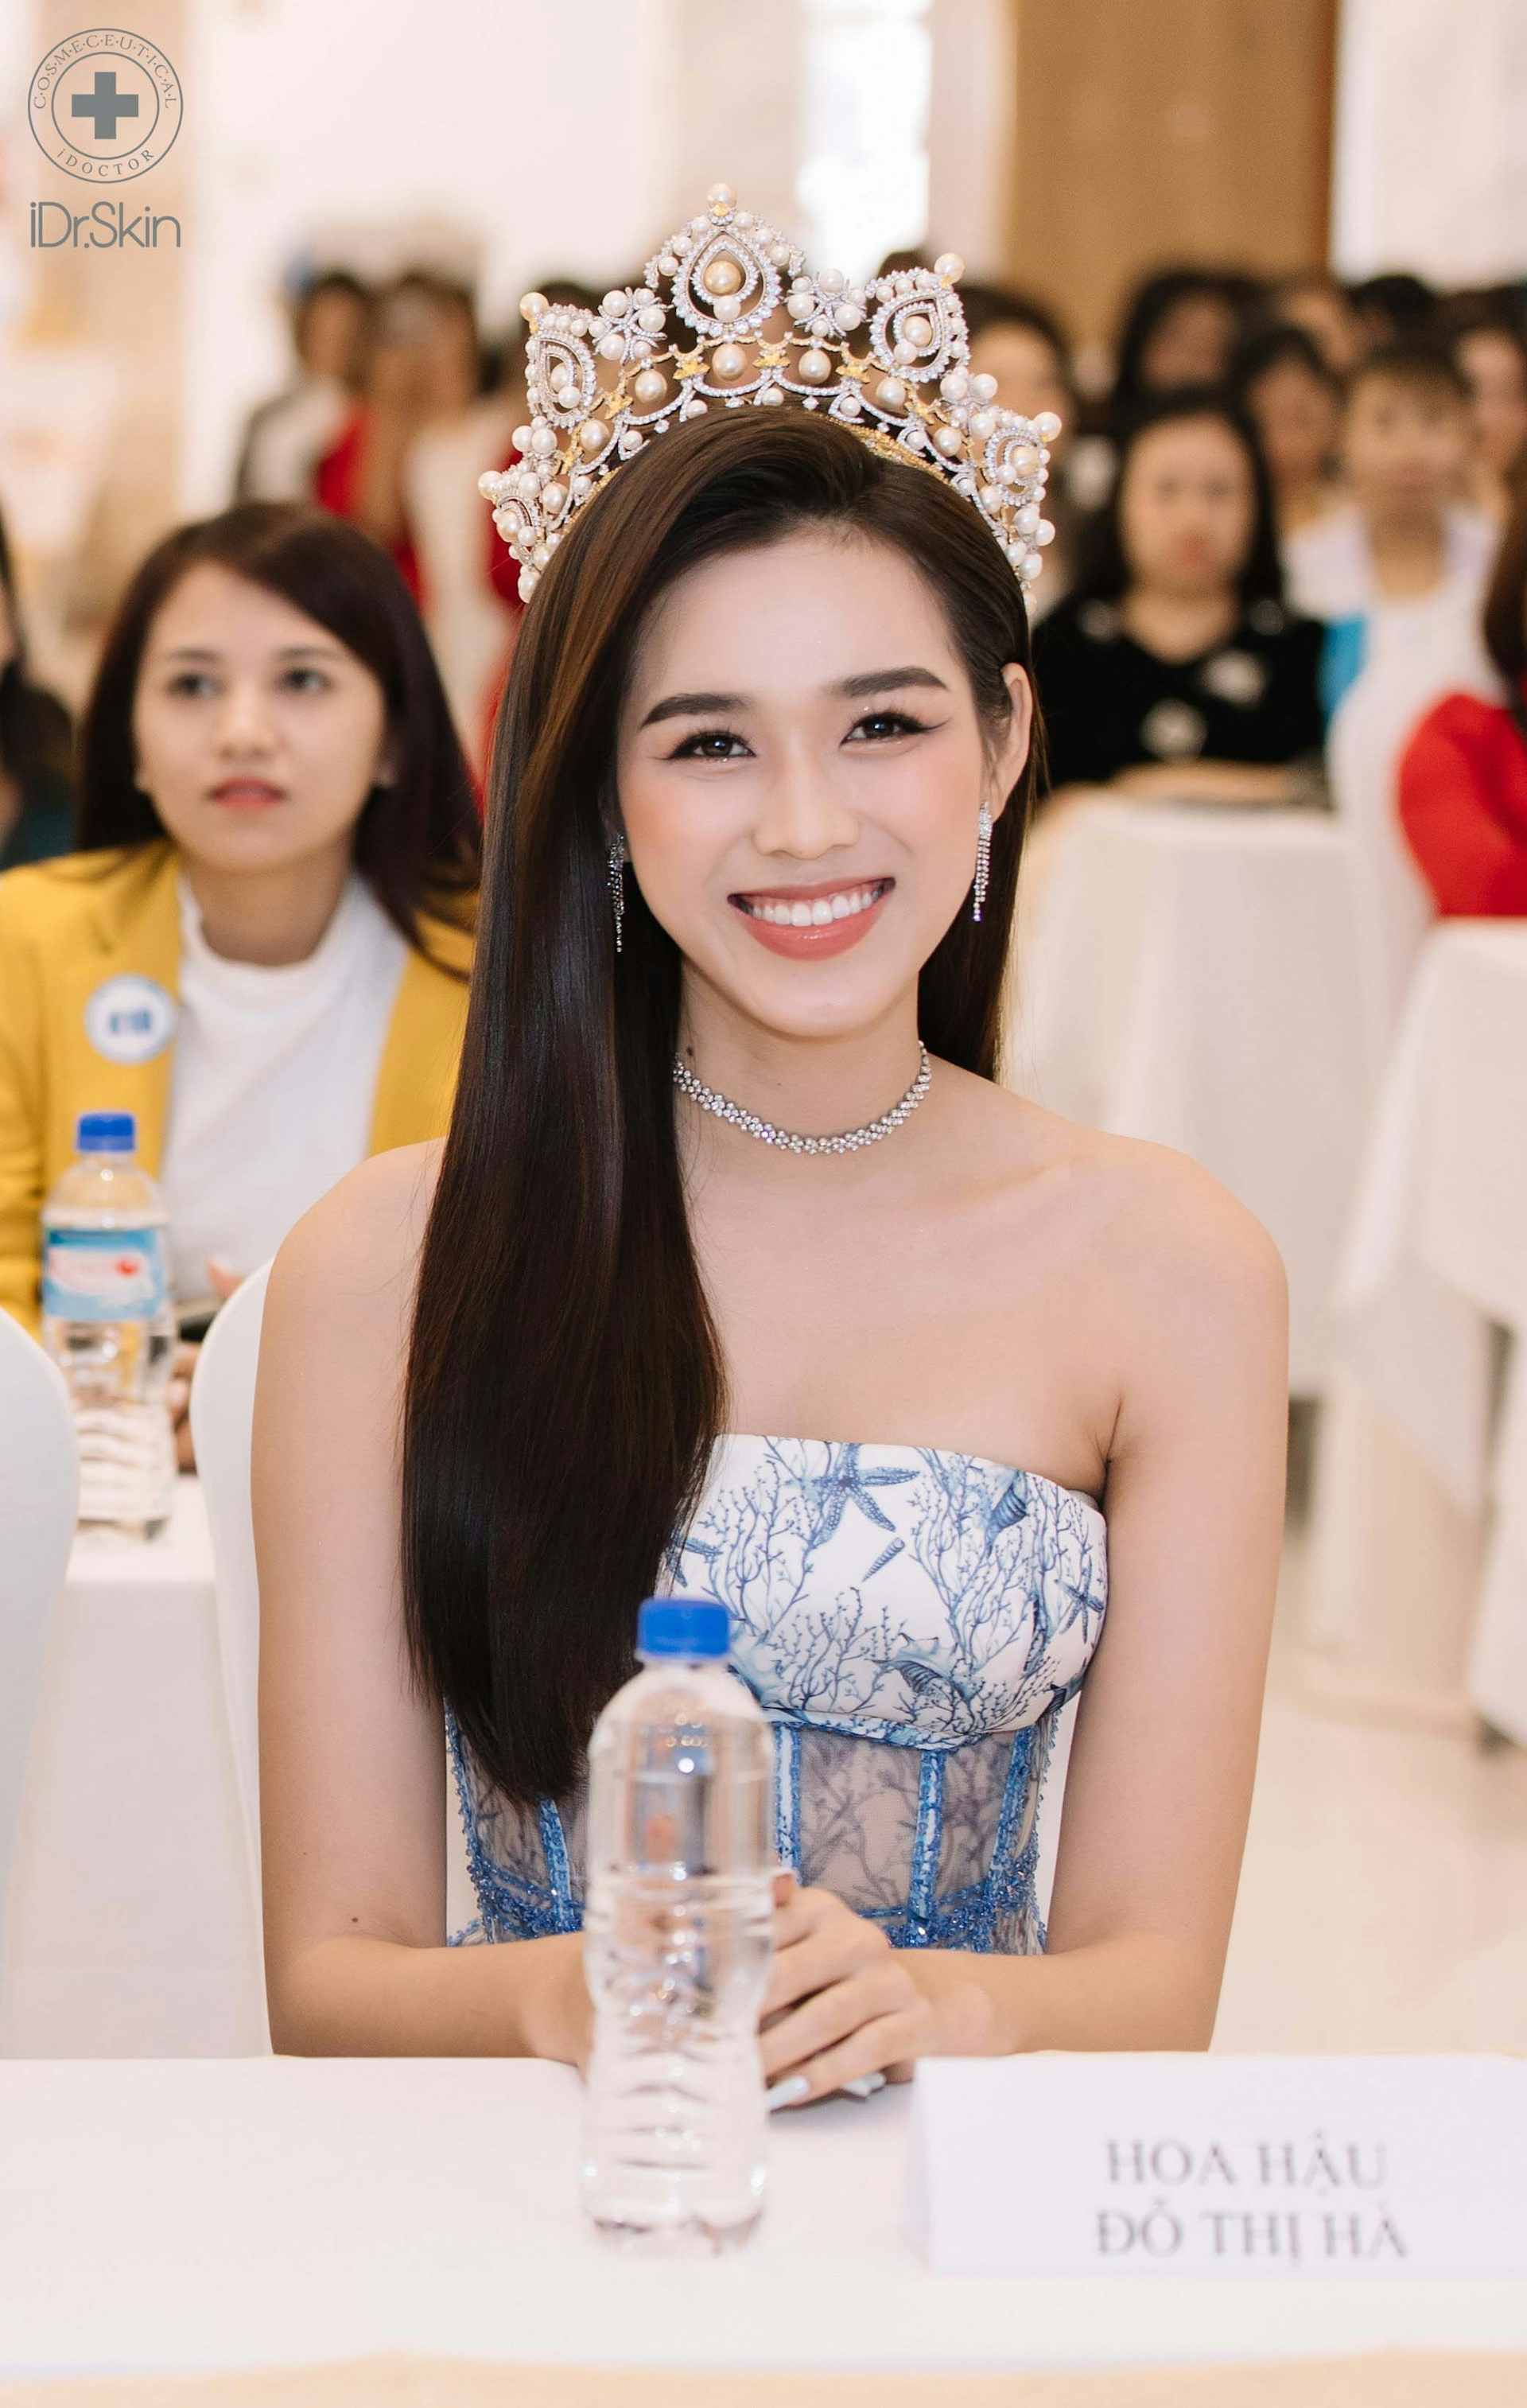 Hoa hậu Đỗ Thị Hà ghi điểm với phong cách nhẹ nhàng tại Bio Space Hà Nội